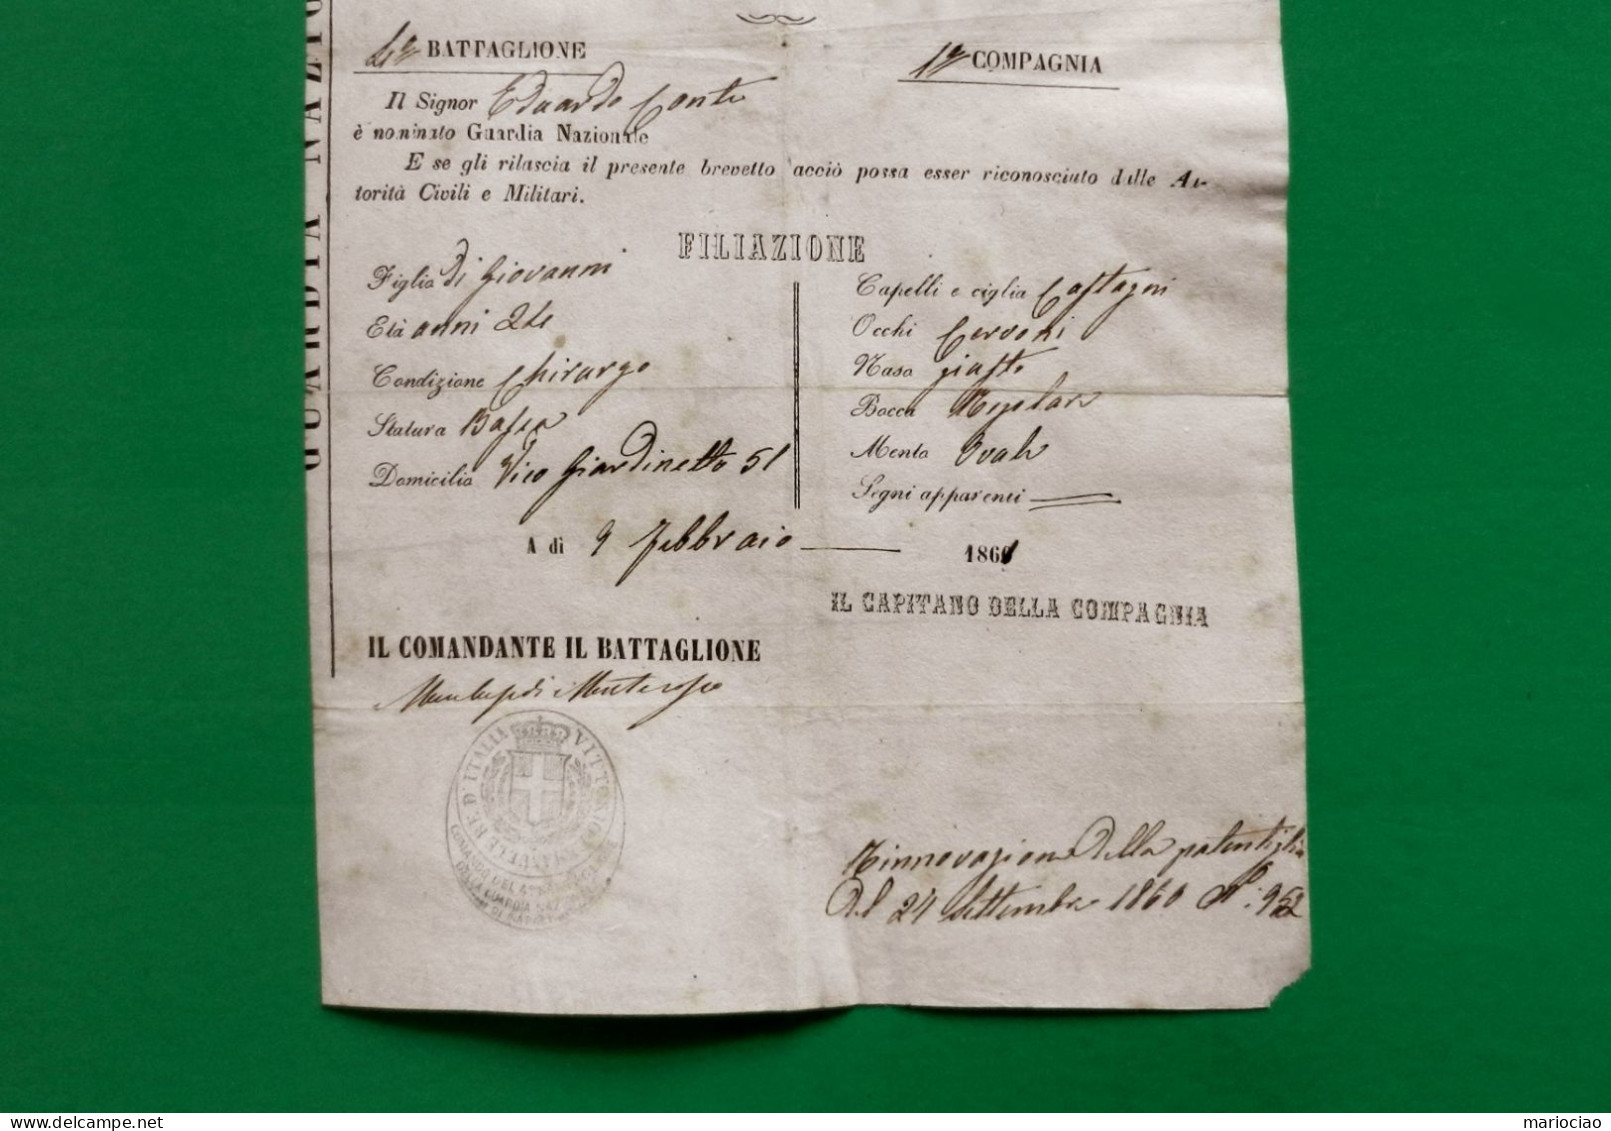 D-IT Giuseppe Garibaldi DITTATORE DELL'ITALIA MERIDIONALE 1861 Rarità ! - Historische Documenten